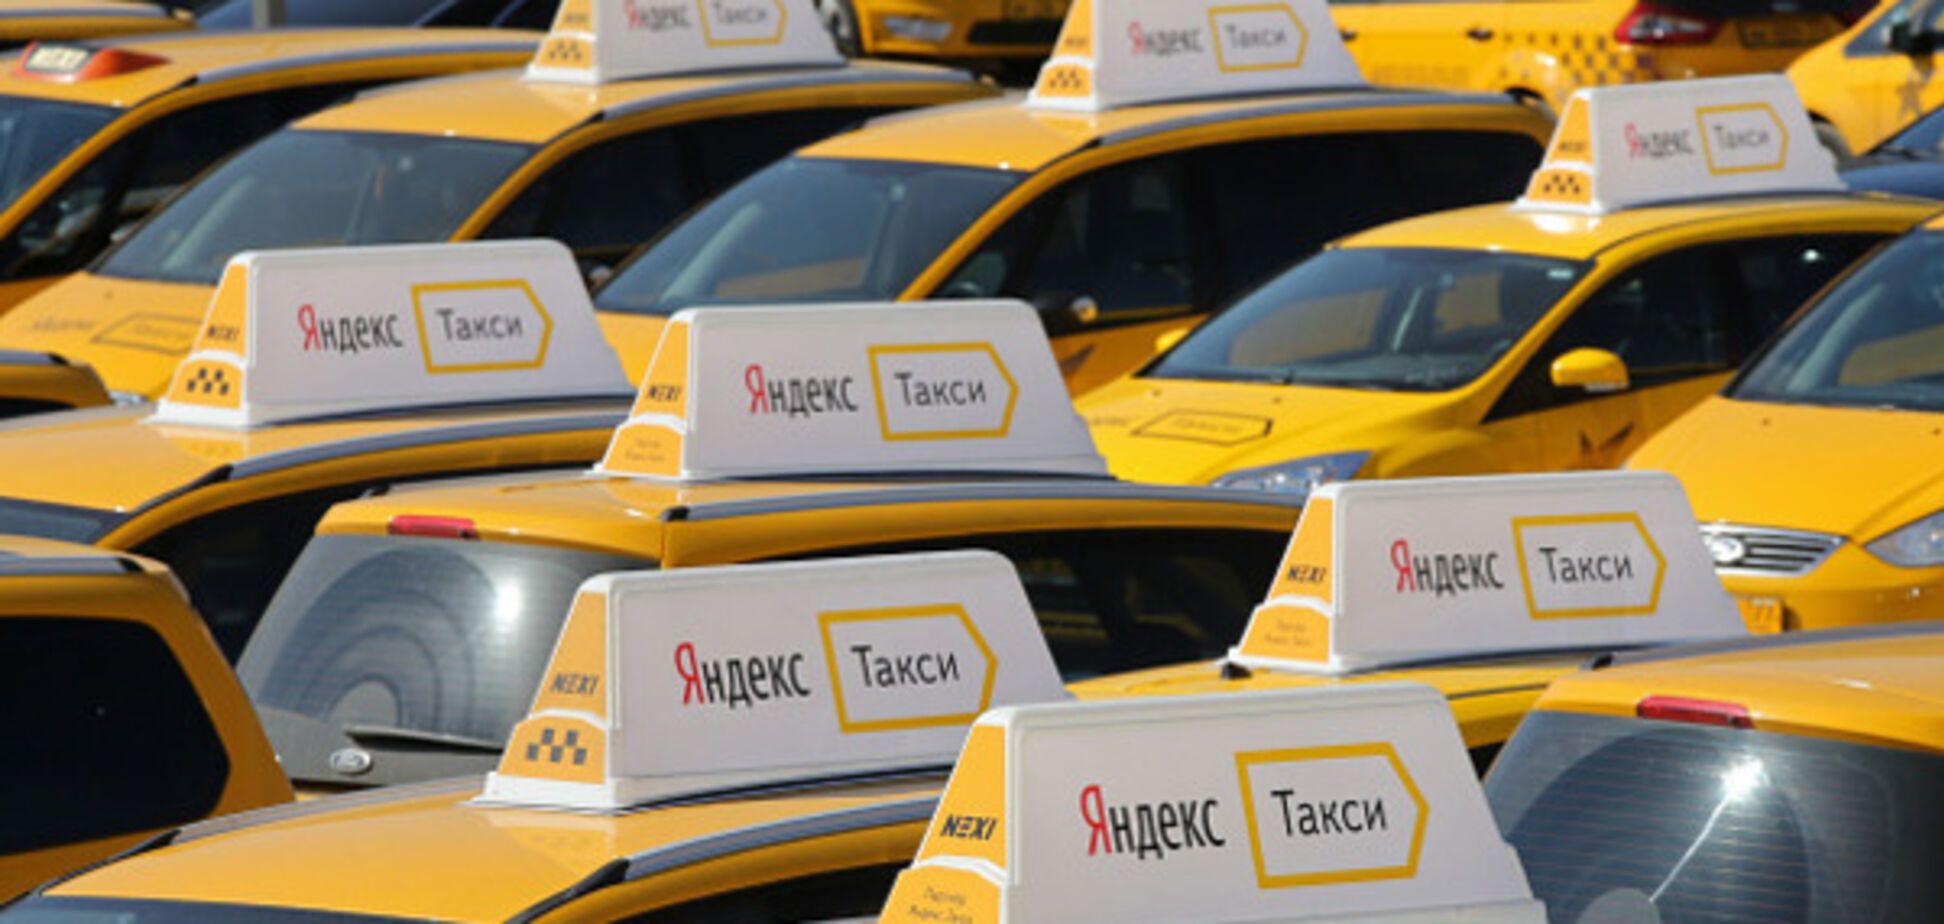 Яндекс.Таксі